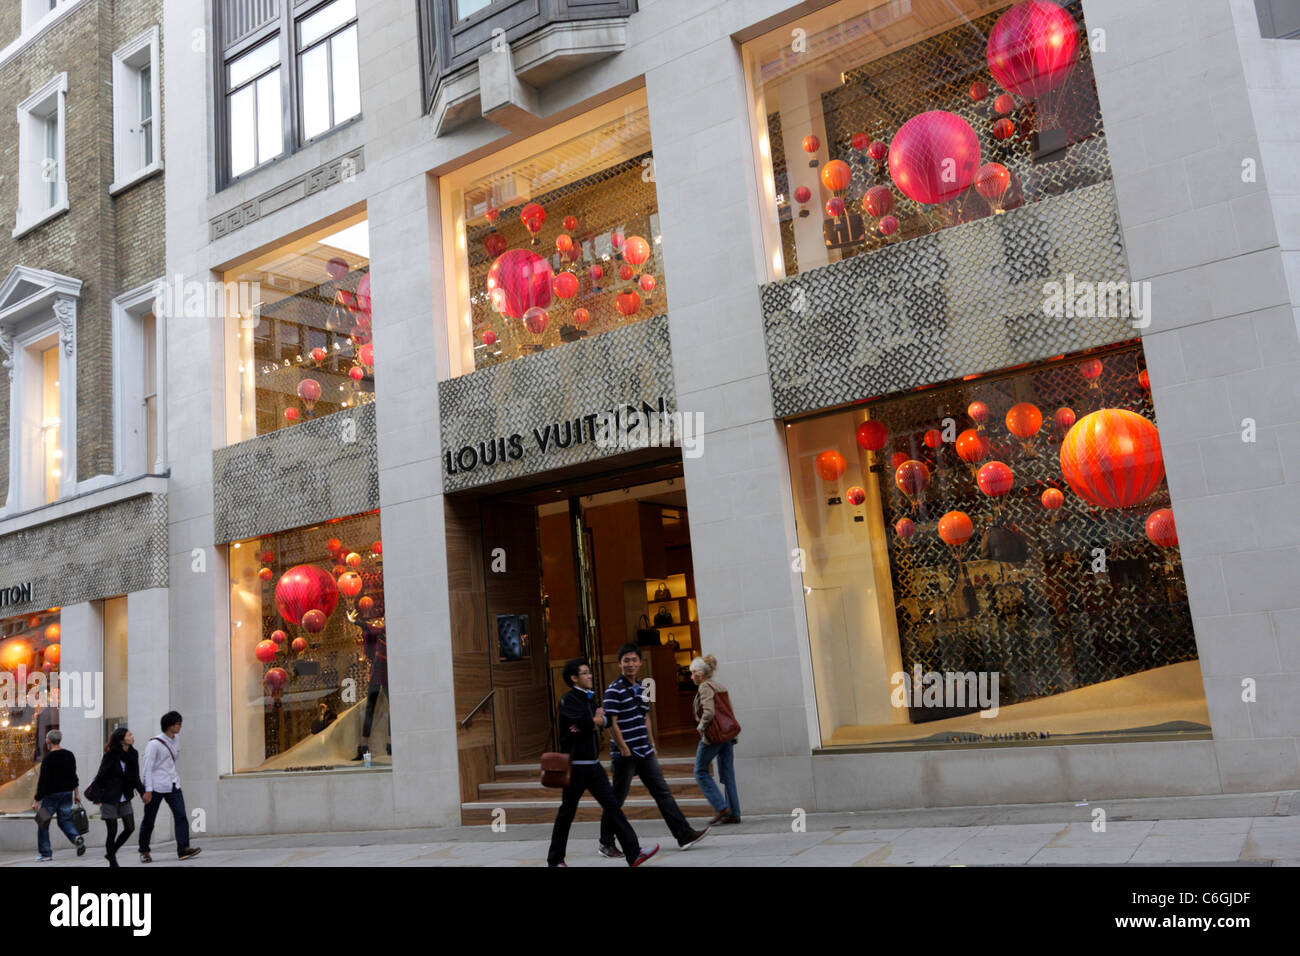 Louis Vuitton Schaufenster Anzeige an Ihren Flagship Store in New Bond Street, London Stockfoto ...